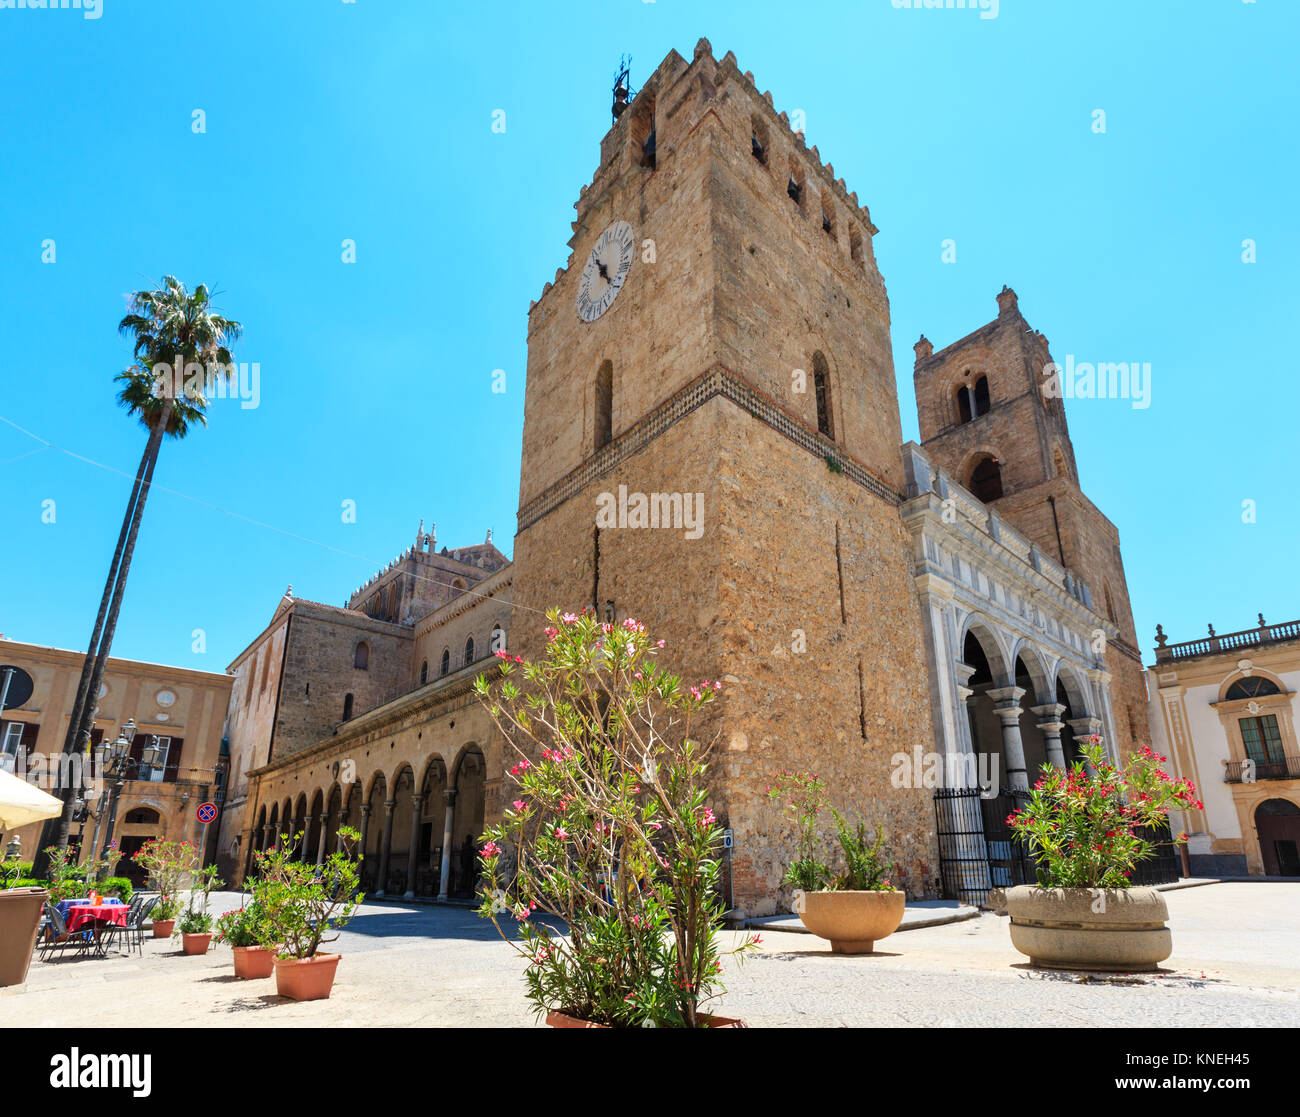 Stadt Blick auf die Kathedrale von Monreale, Palermo, Sizilien, Italien. Eine der größten Umfang Beispiele normannischer Architektur. Stockfoto